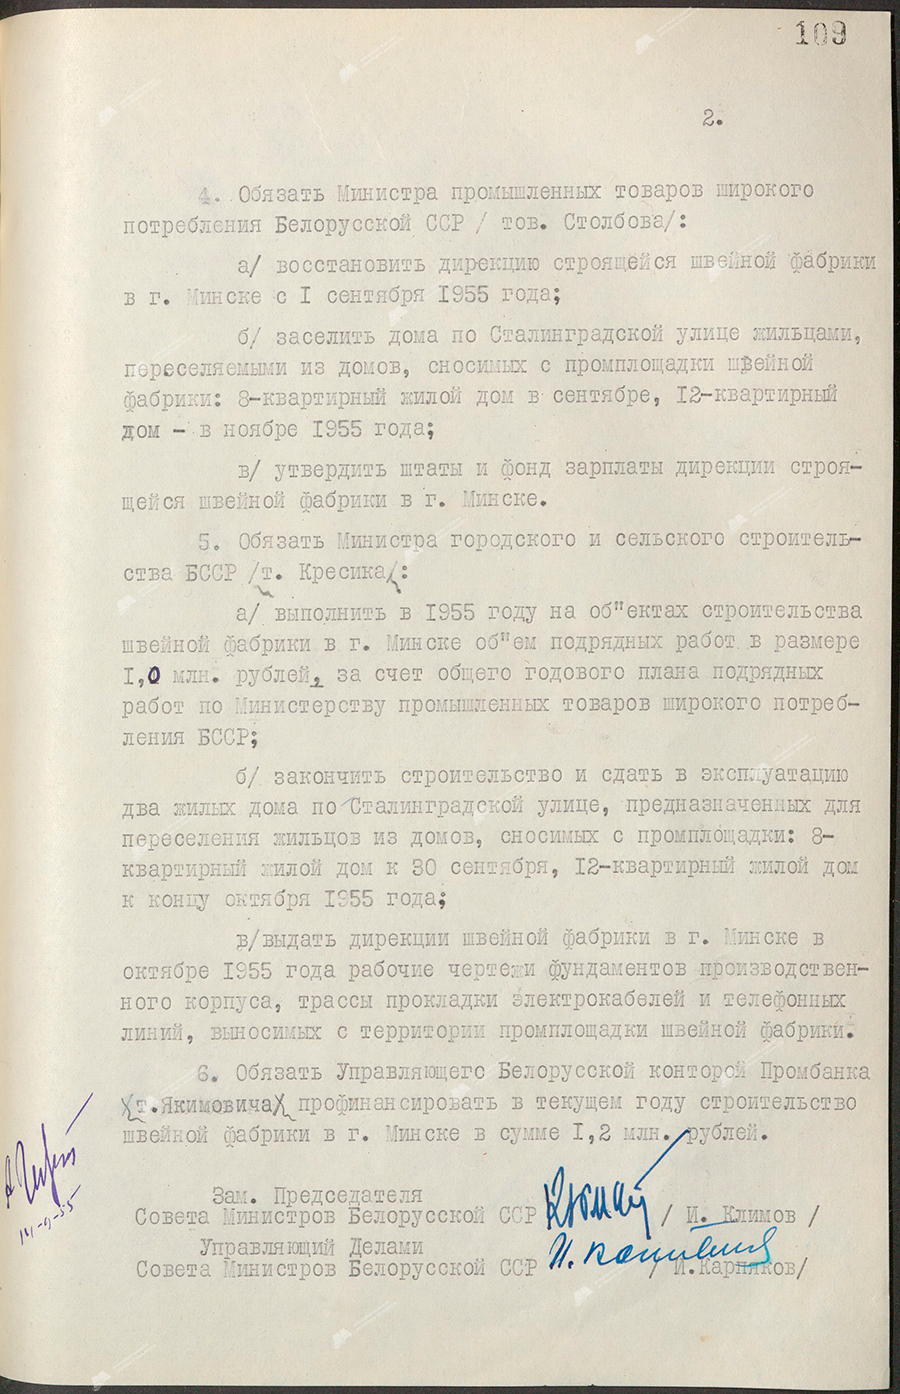 Beschluss Nr. 512 des Ministerrats der Weißrussischen SSR «Über die Genehmigung eines umfassenden Projektauftrags für den Bau einer Bekleidungsfabrik in Minsk»-стр. 1